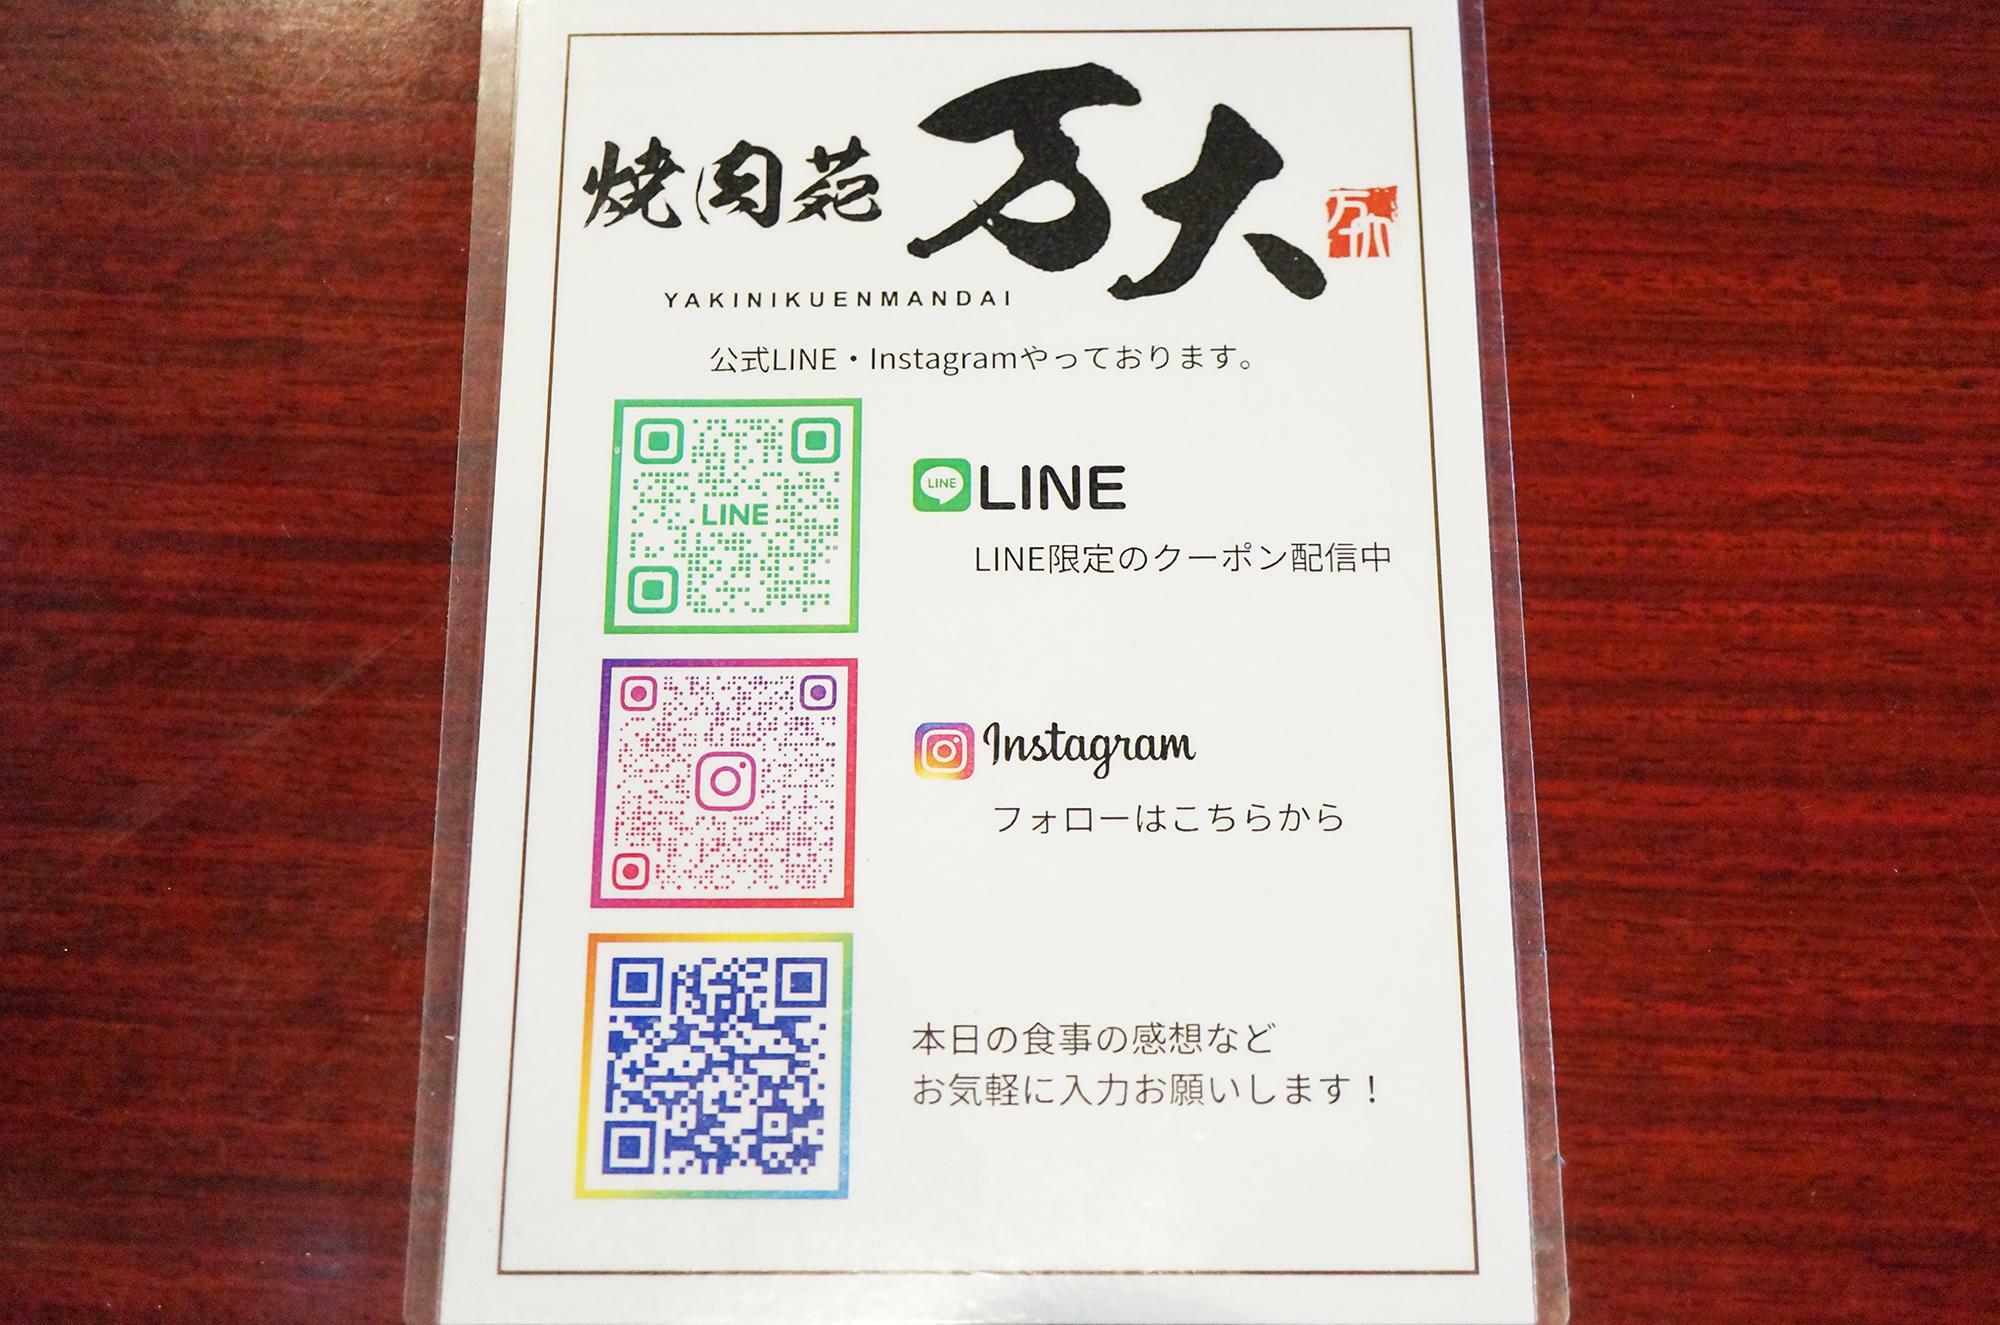 公式Instagramのフォローで100円引きになるサービスもあります。